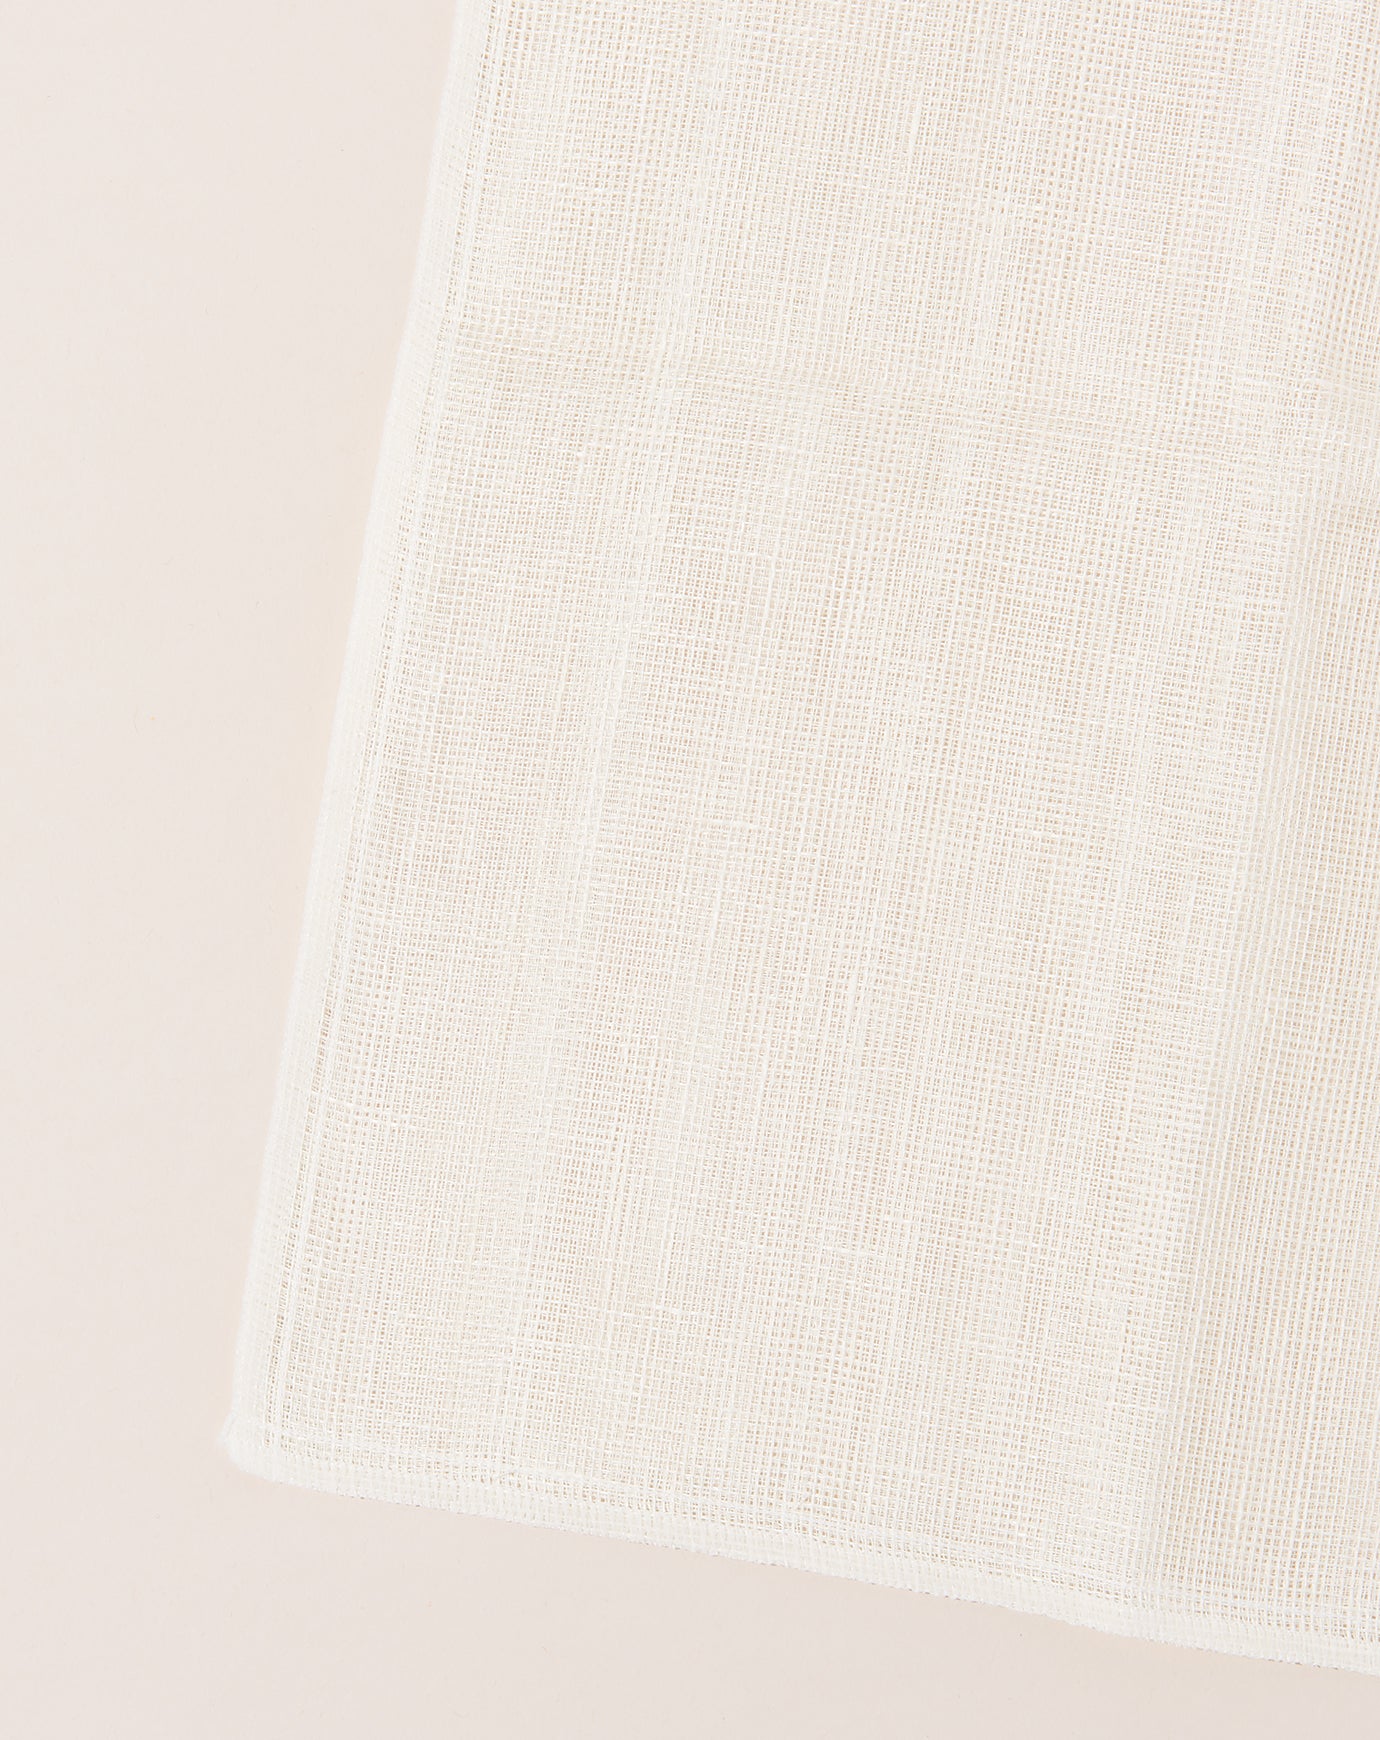 Saikai Okai Body Scrub Towel in White